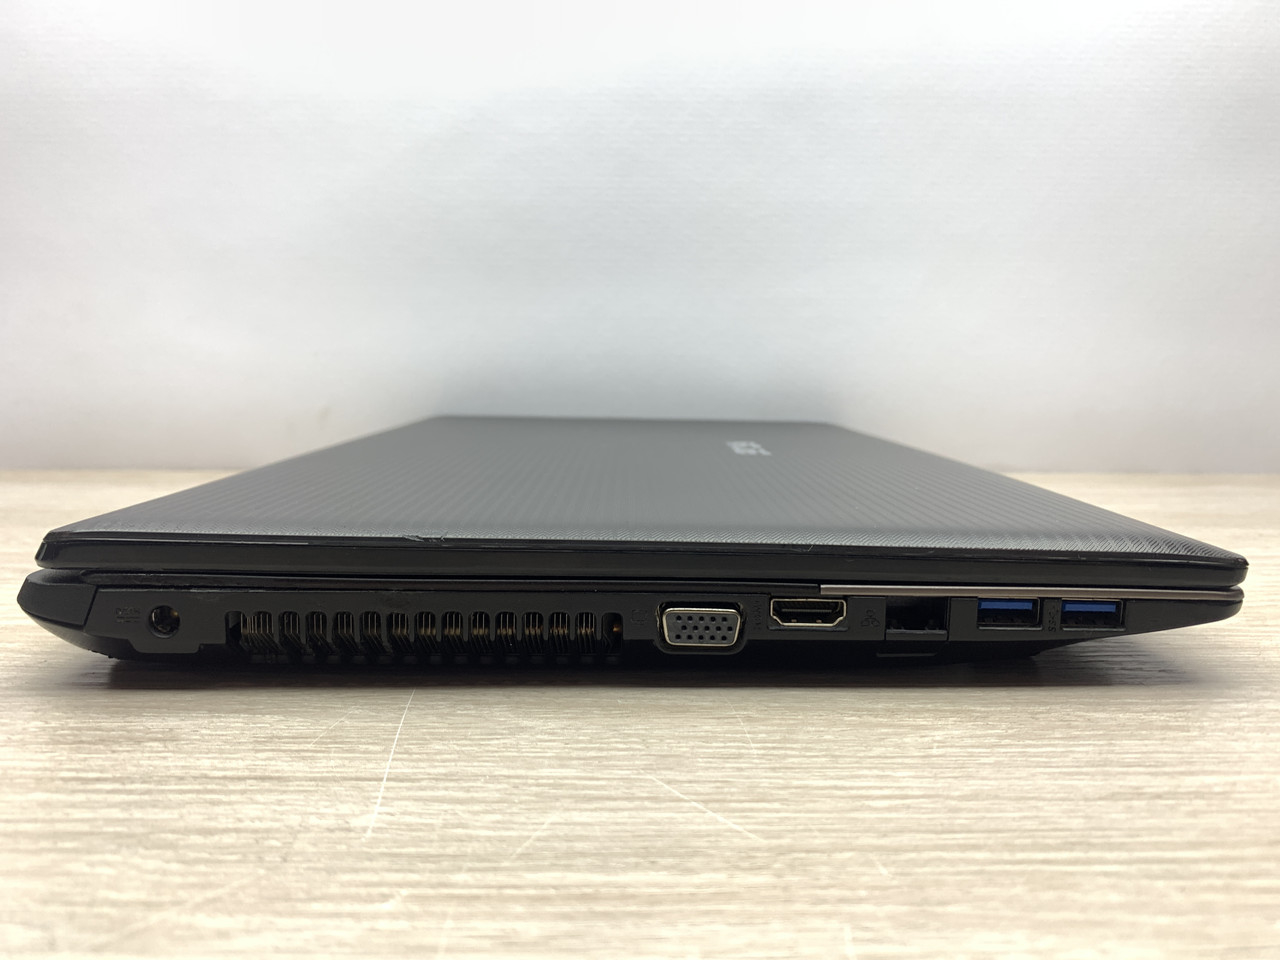 Б/в Ноутбук Asus A55 / Intel Core i5-3320M / 8 Гб / SSD 120 Гб + HDD 1 Тб / Клас B